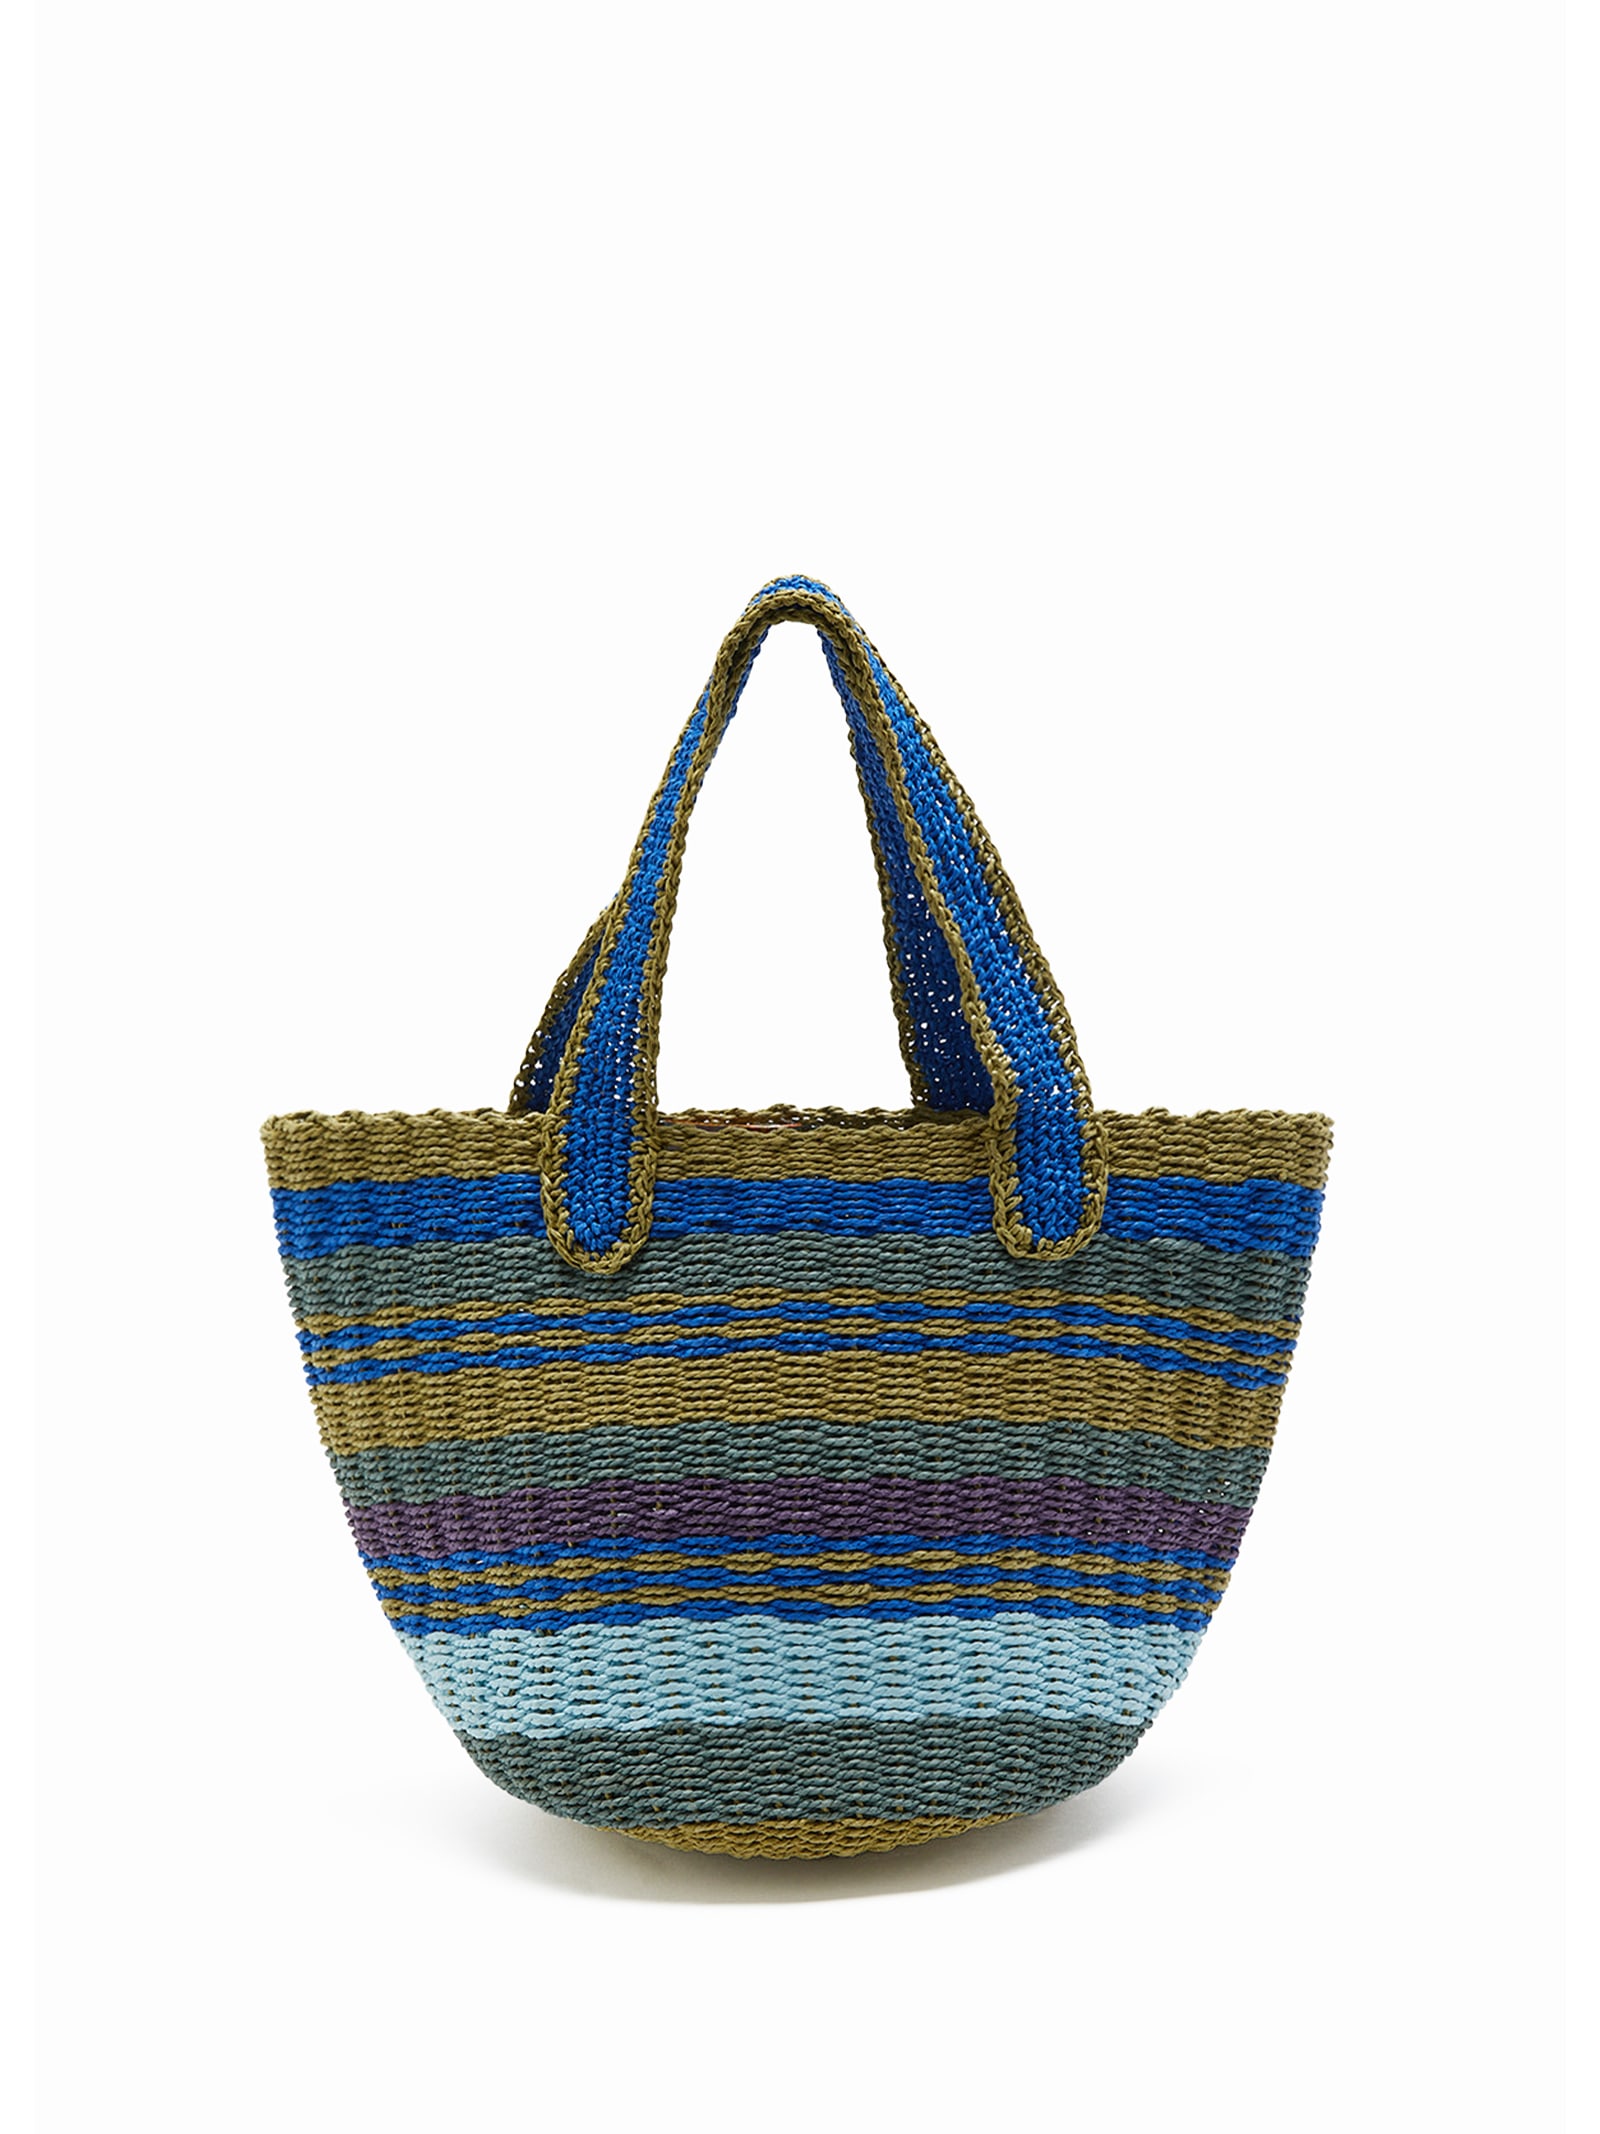 Shopping Bag In Hand-woven Multicolored Raffia